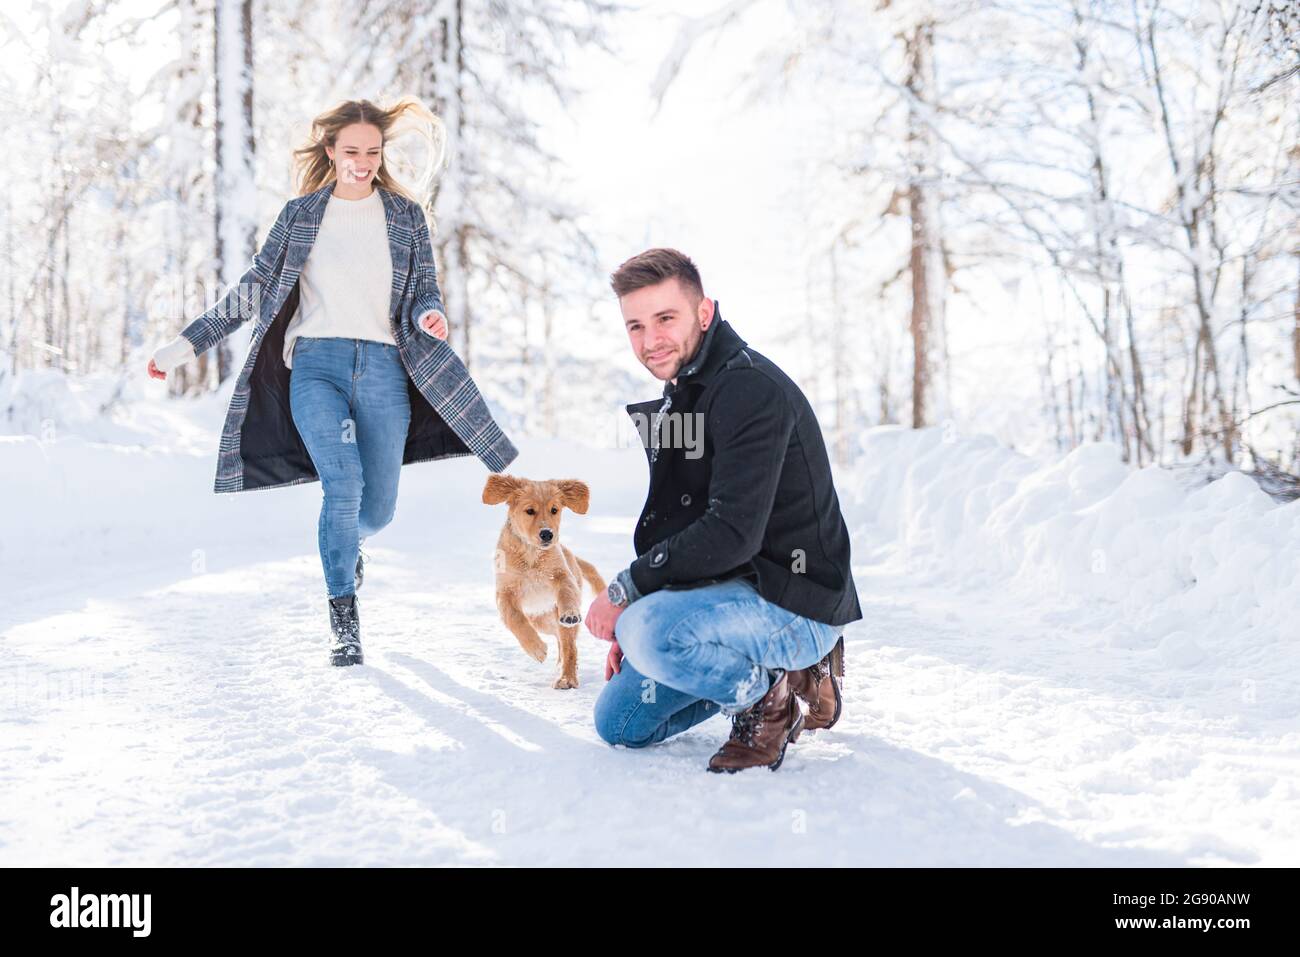 Homme qui se caroupe sur la neige pendant que la petite amie court avec un chien dans la neige pendant les vacances Banque D'Images